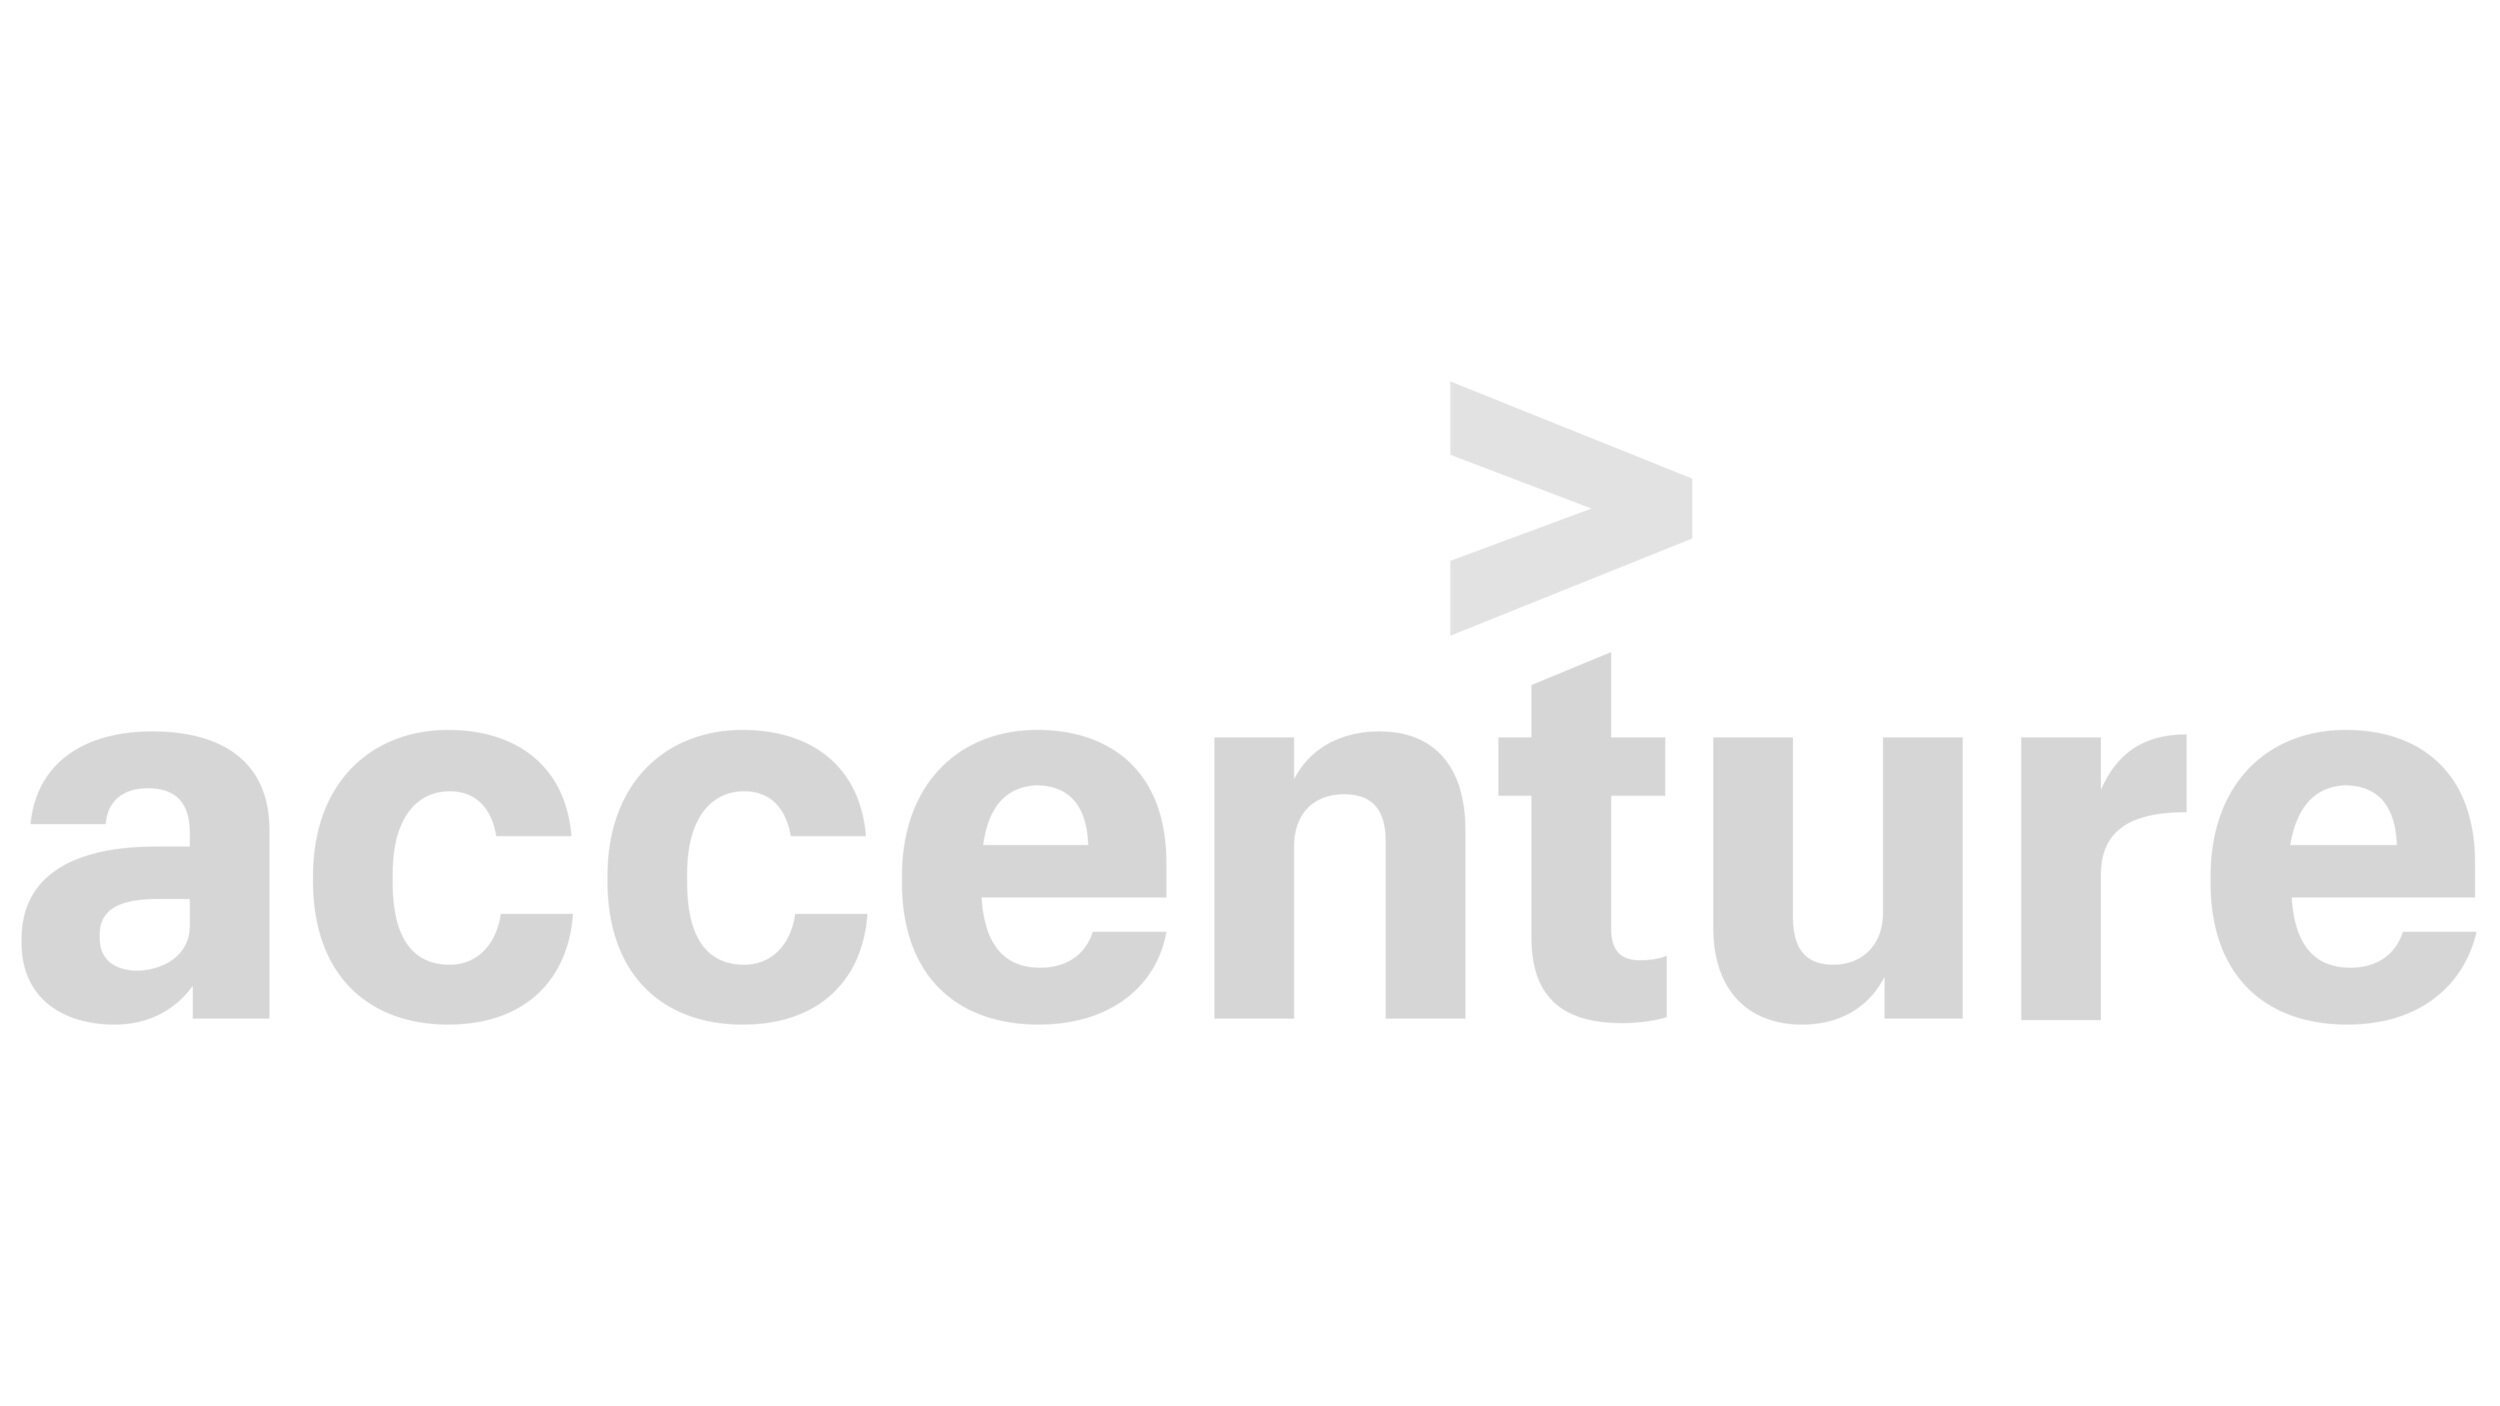 Accenture-Logo.jpg